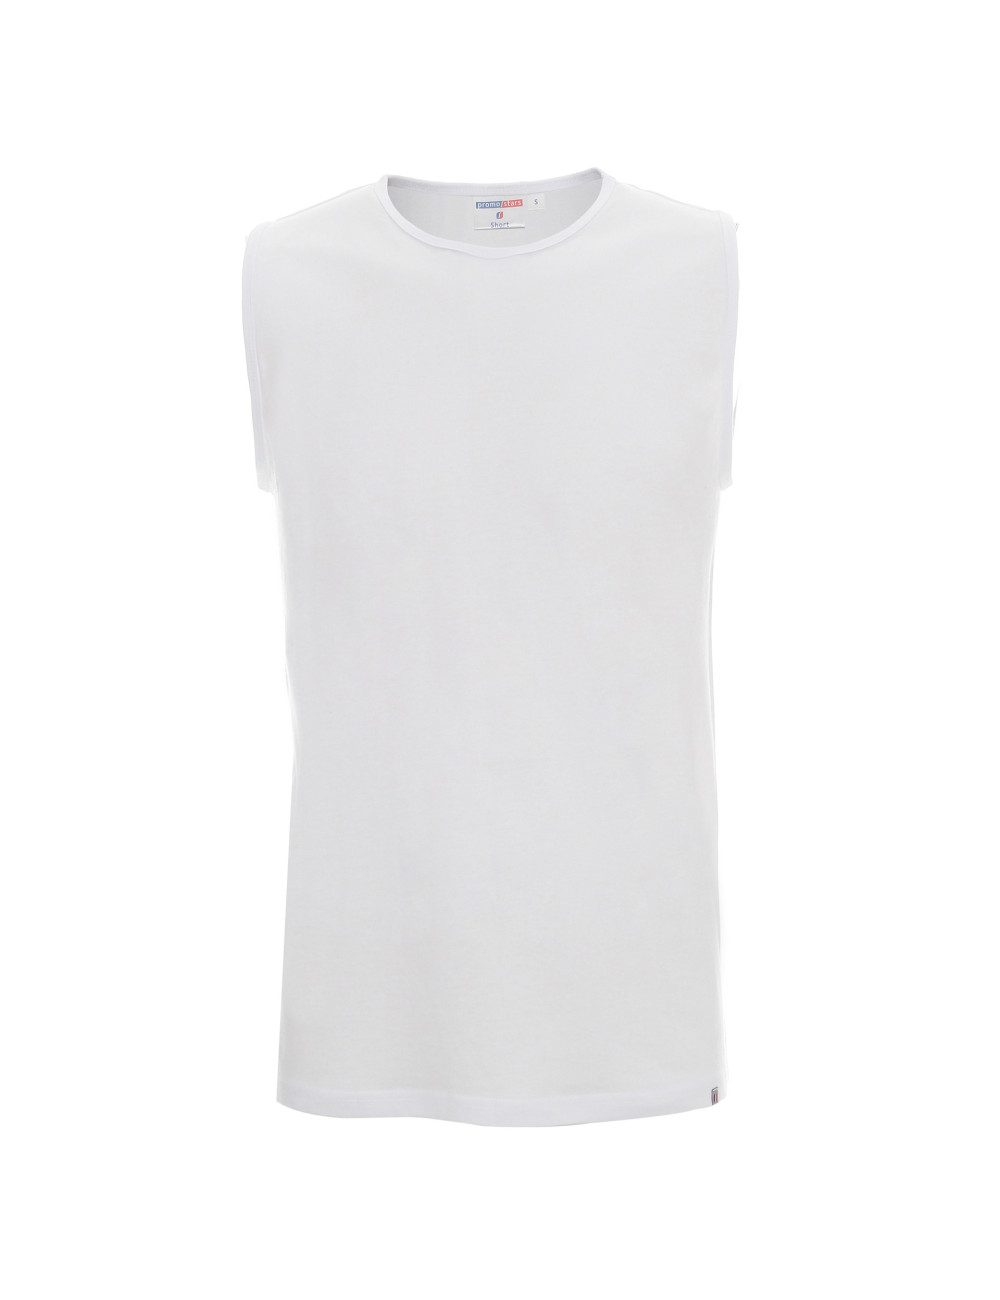 Weißes kurzes Herren-T-Shirt von Promostars